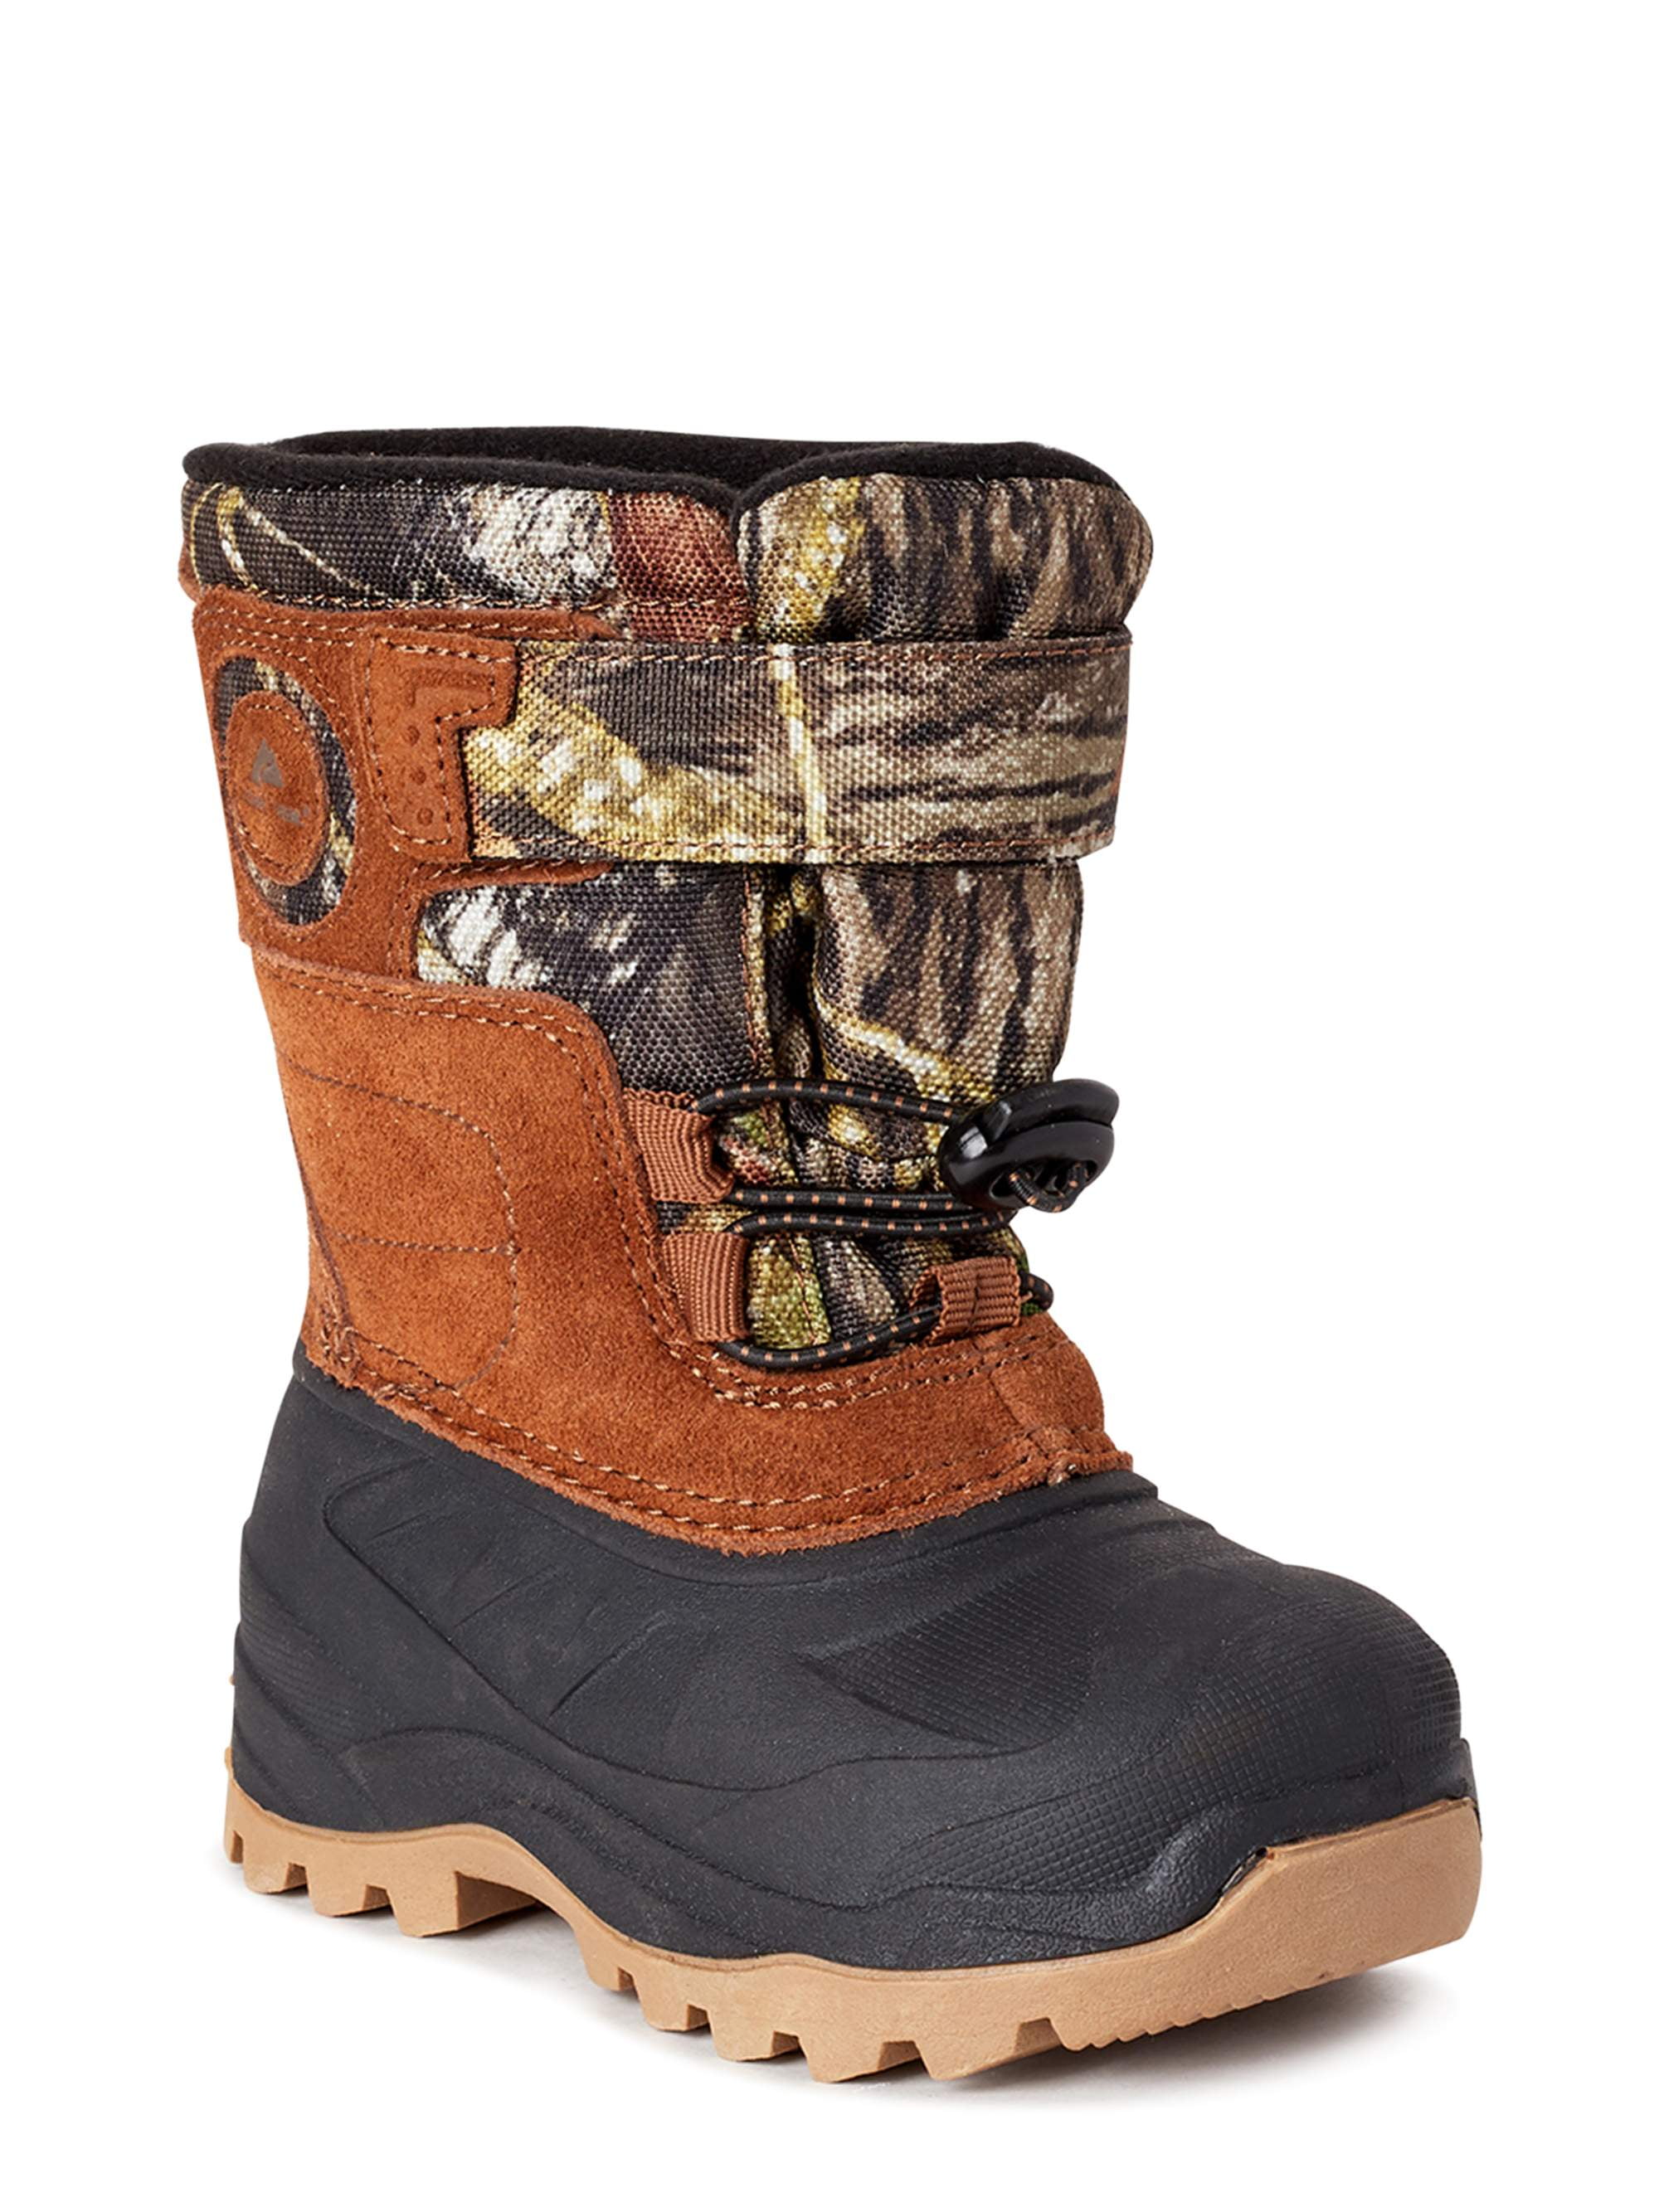 ozark trail camo boots